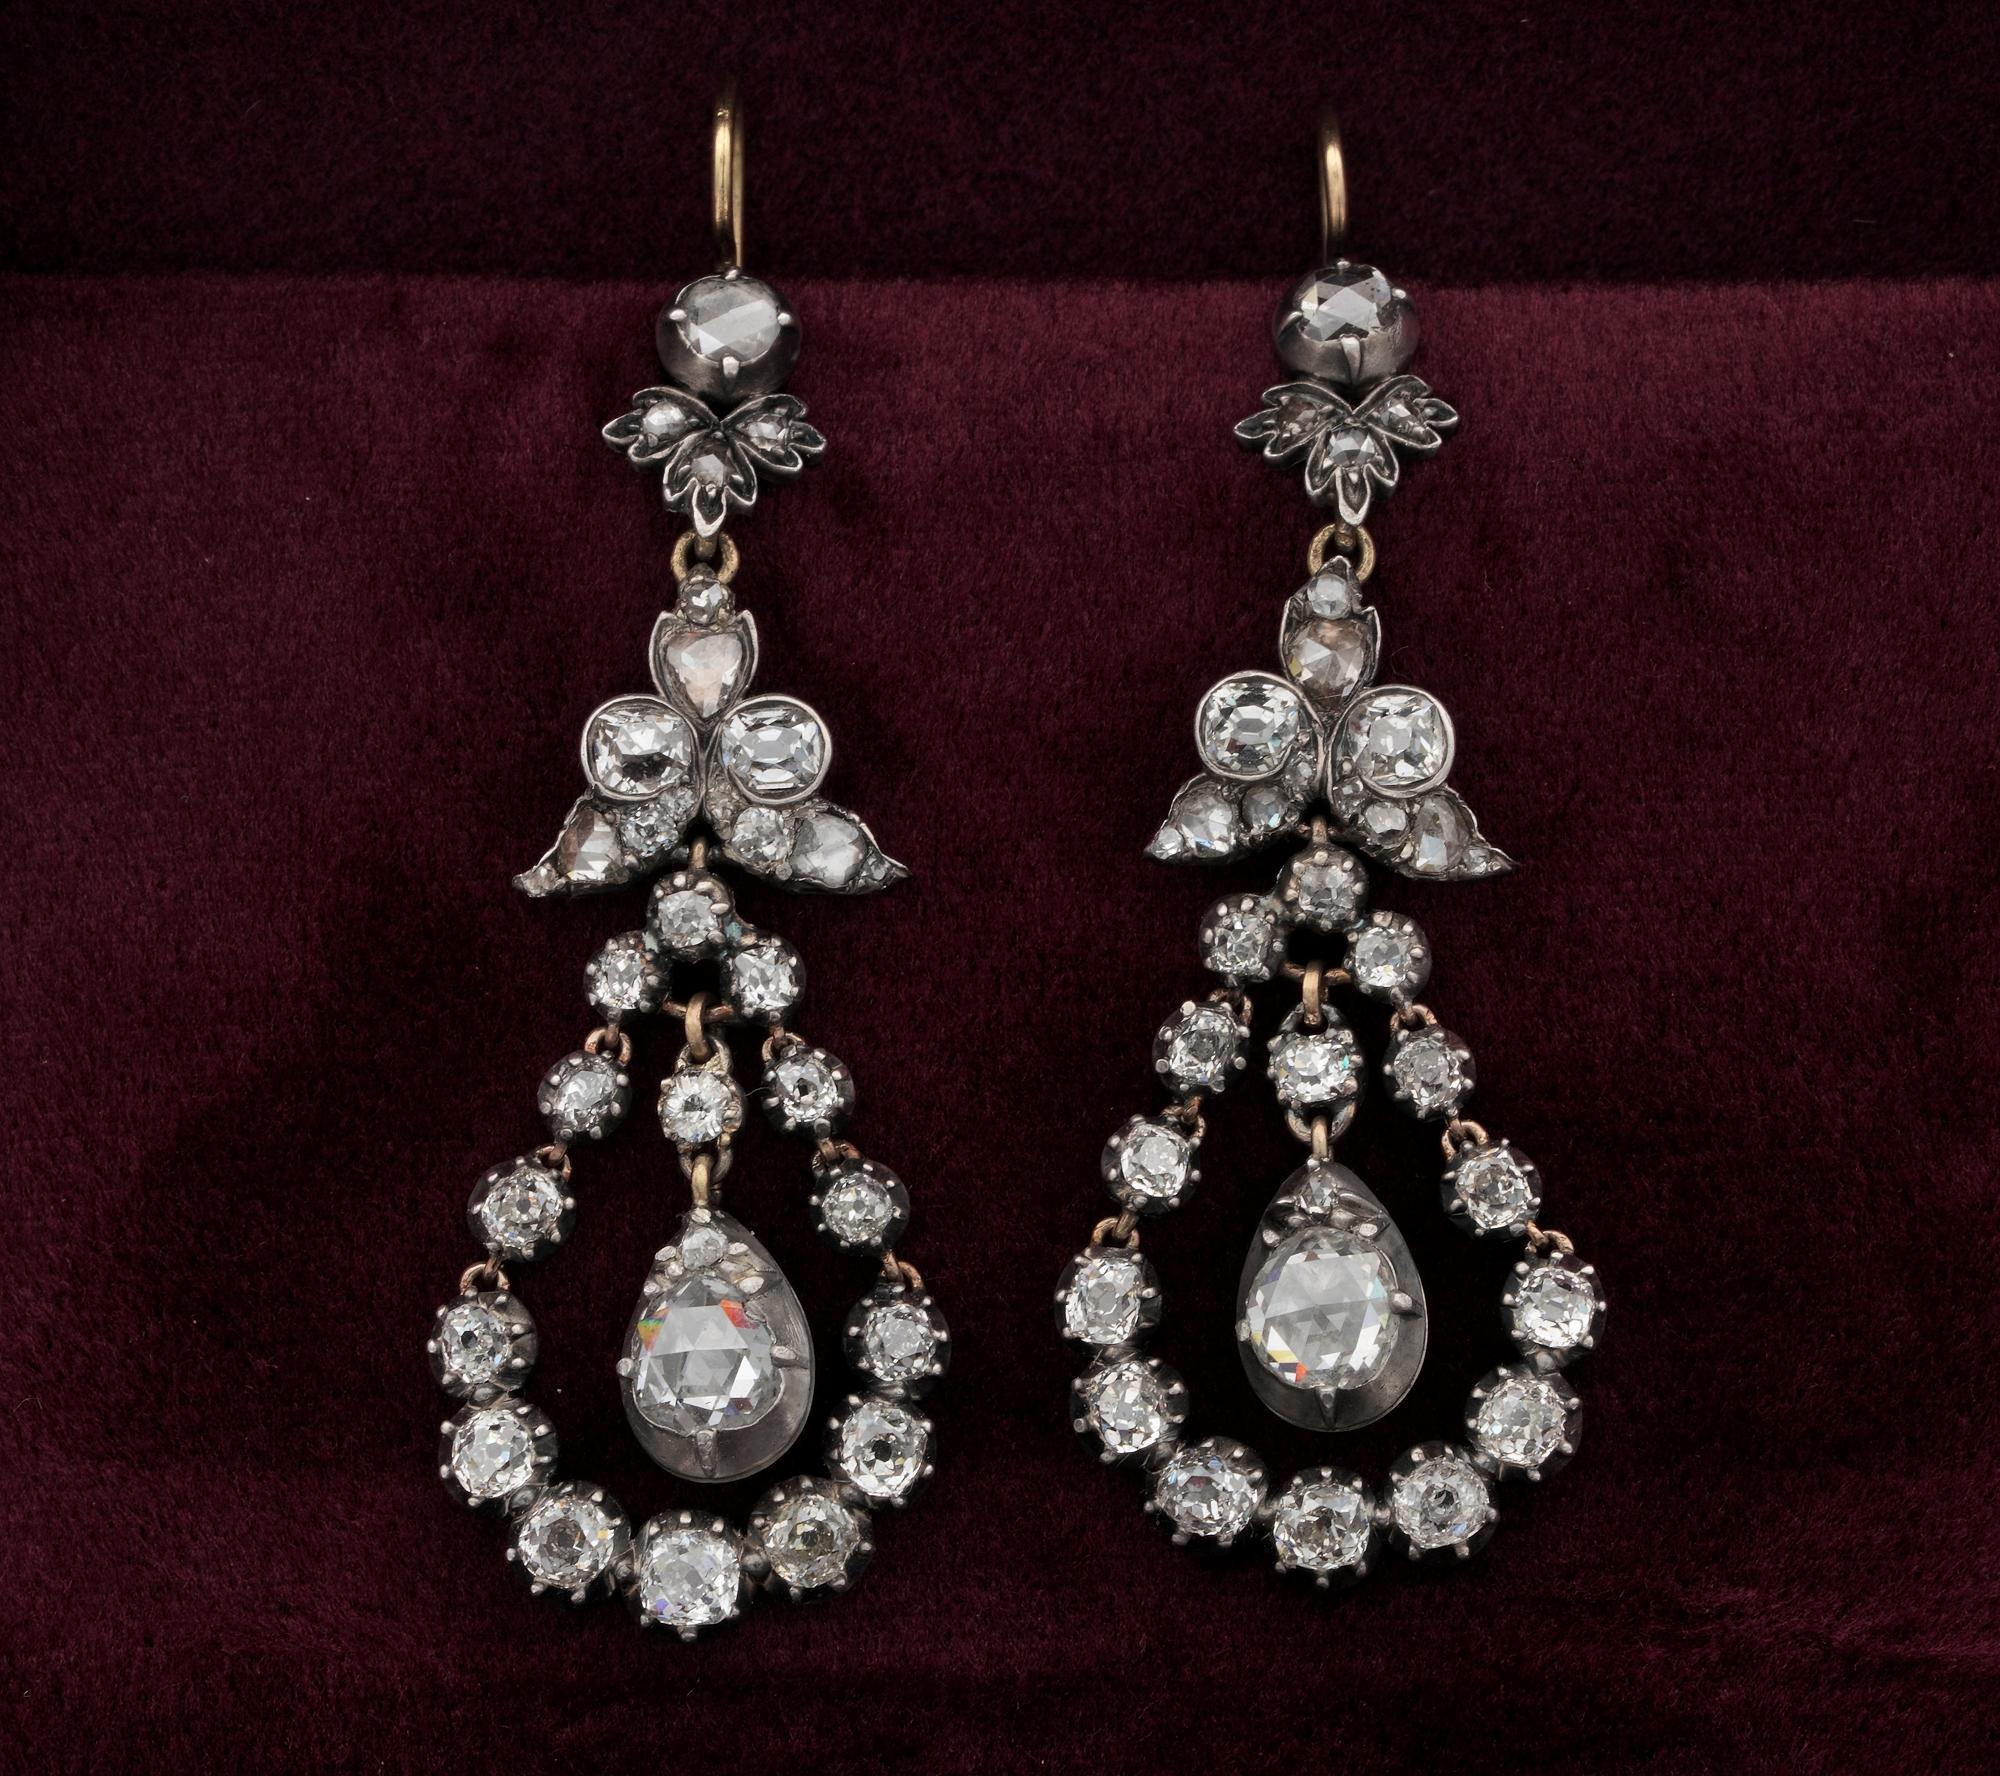 Un morceau d'éternité
Ravissante paire de boucles d'oreilles chandelier en diamant d'époque géorgienne
Une beauté rare, un trésor intemporel
Serti d'une sélection de diamants taillés en rose et en ancienne mine - environ 5,50 ct en TCW -2 diamants